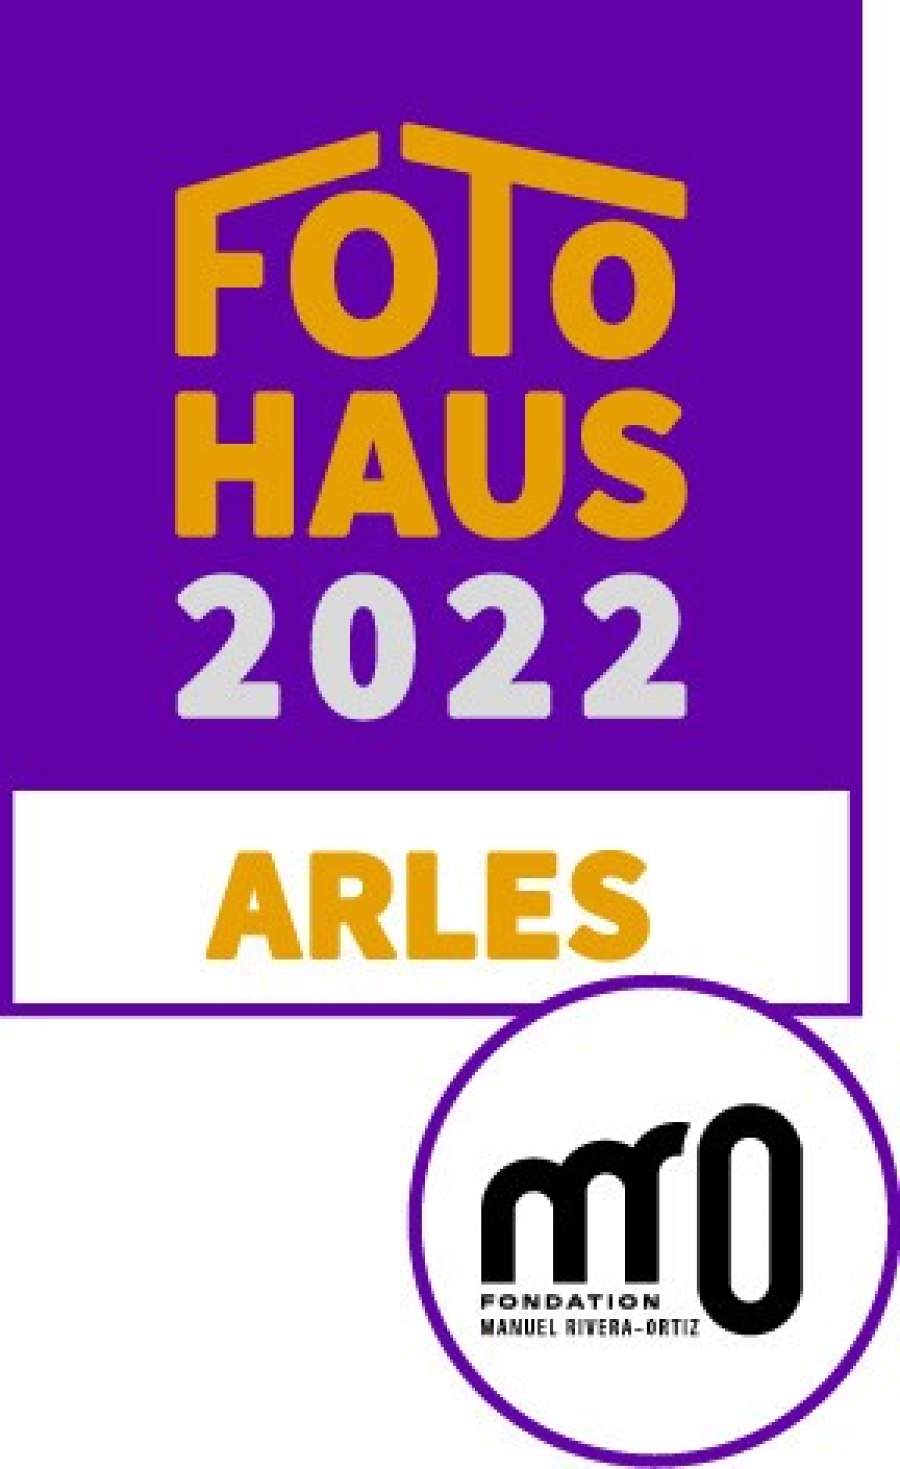 1655383745-foto-haus-2022-arles-sara-imloul